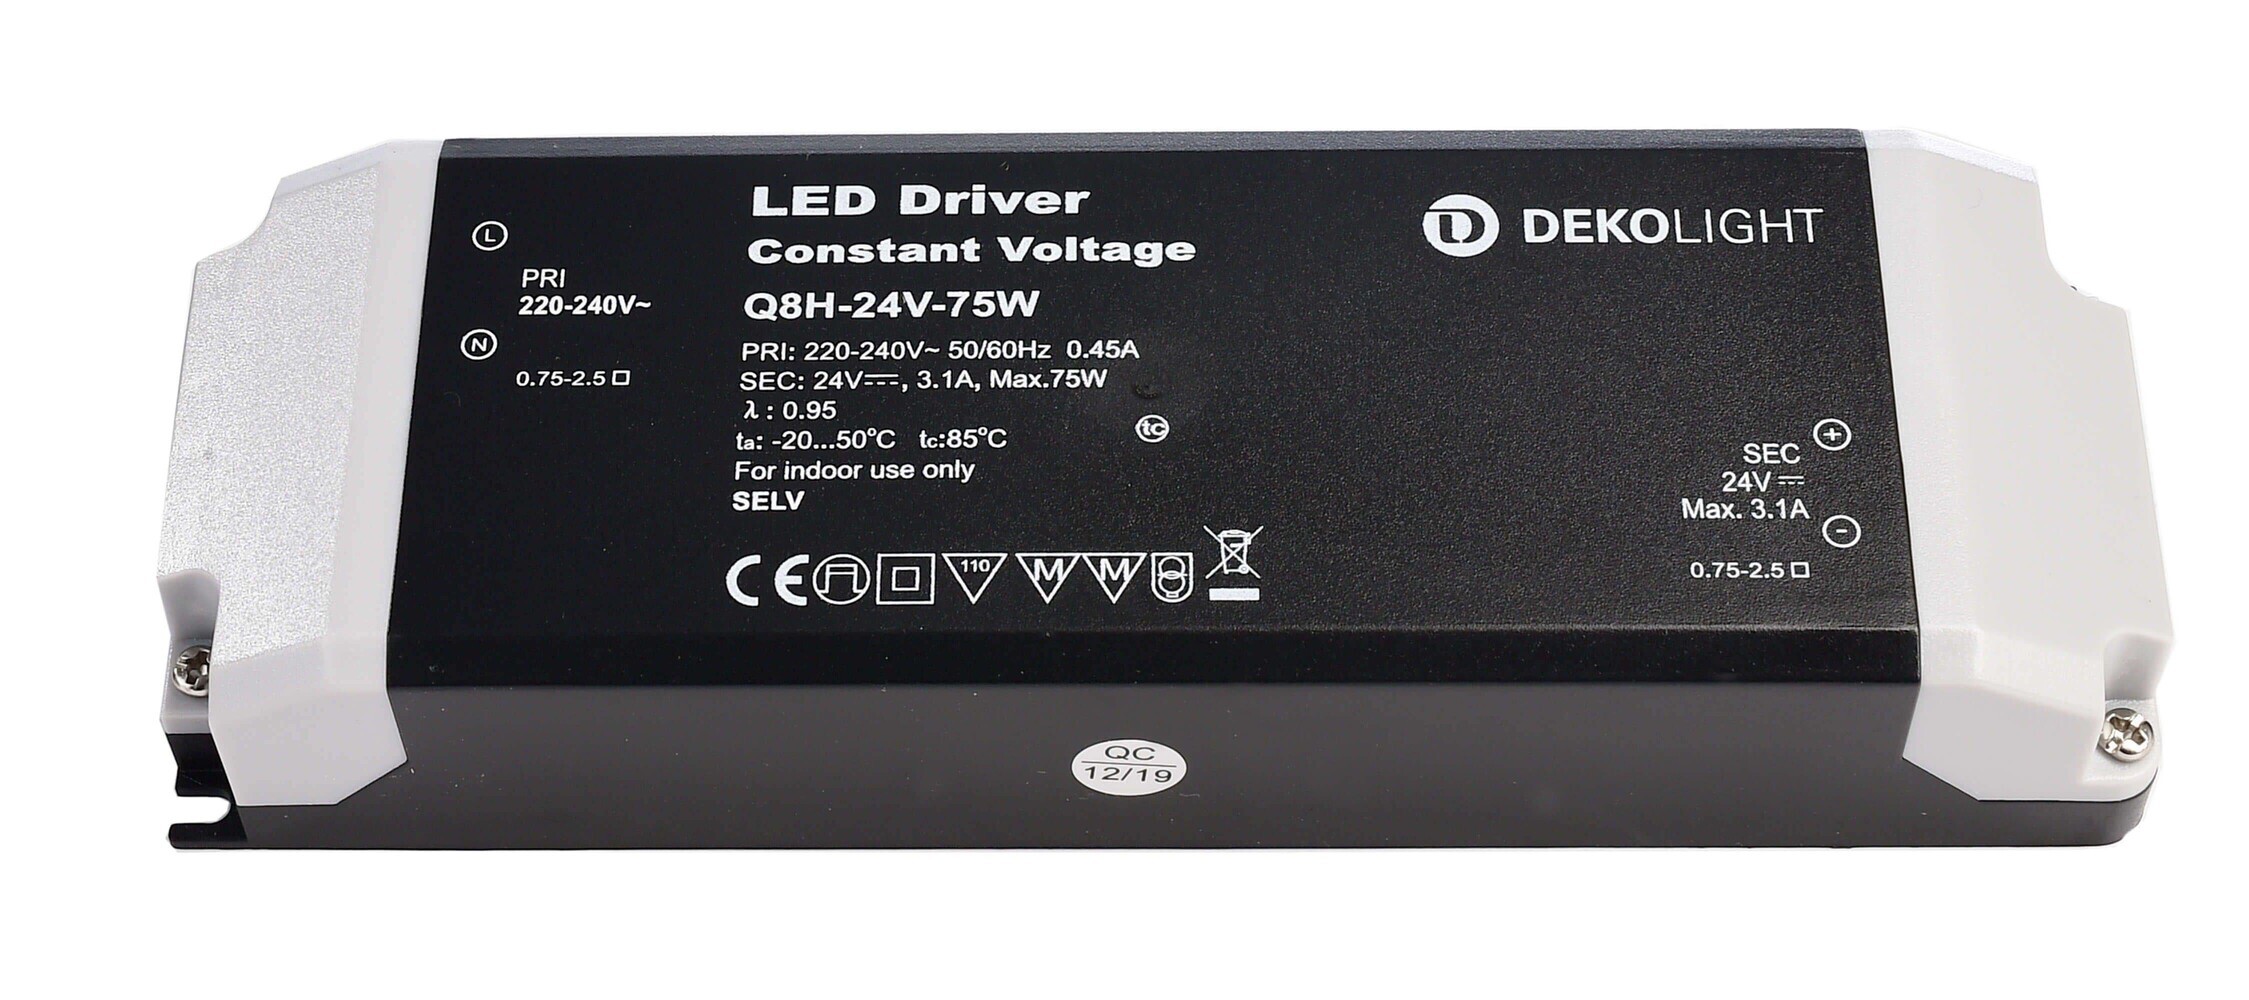 Hochwertiges LED Netzteil der Marke Deko-Light sorgt für konstante Spannung und optimale Leistung